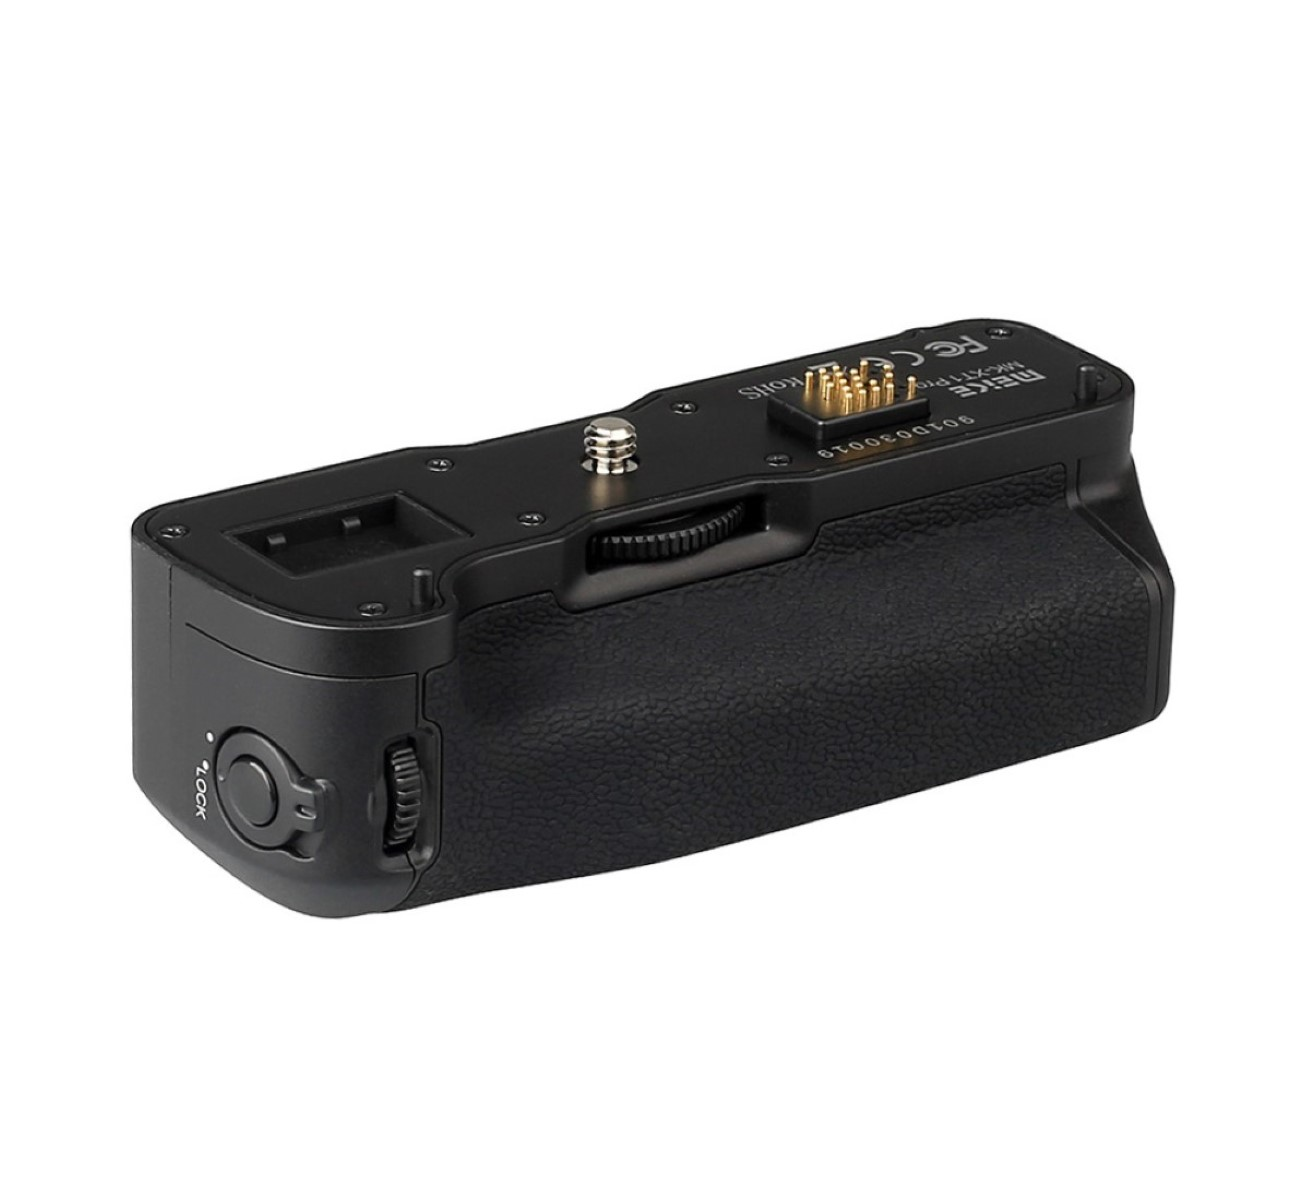 MK-XT1, VG-XT1 für Batteriegriff, Black Fujifilm wie MEIKE optimal X-T1 Hochformat-Fotografie Batteriegriff